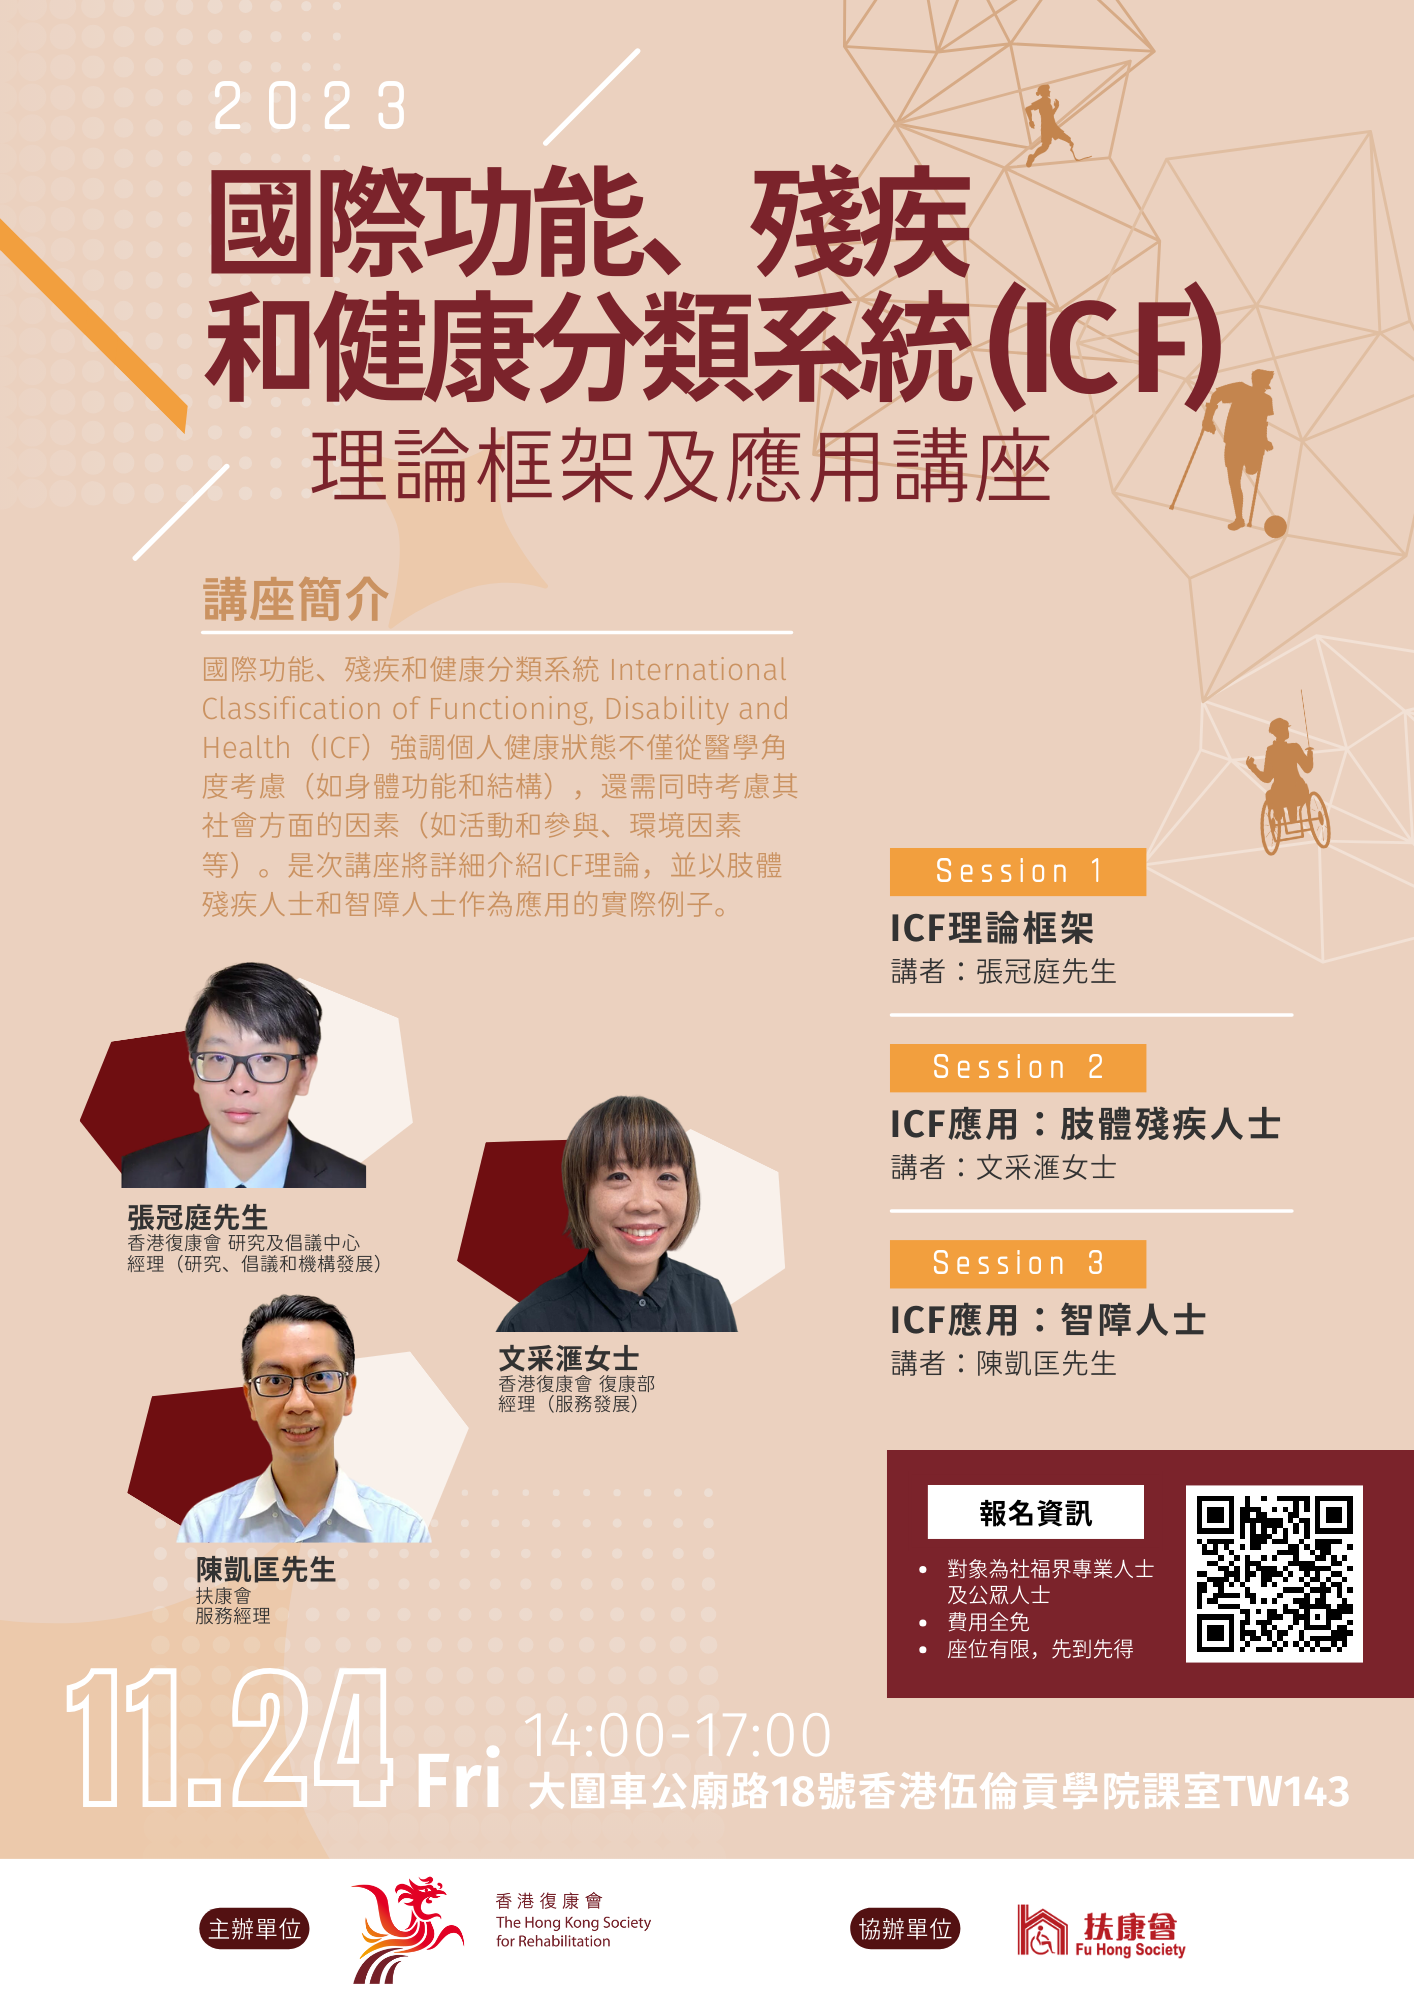 ICF Workshop Poster